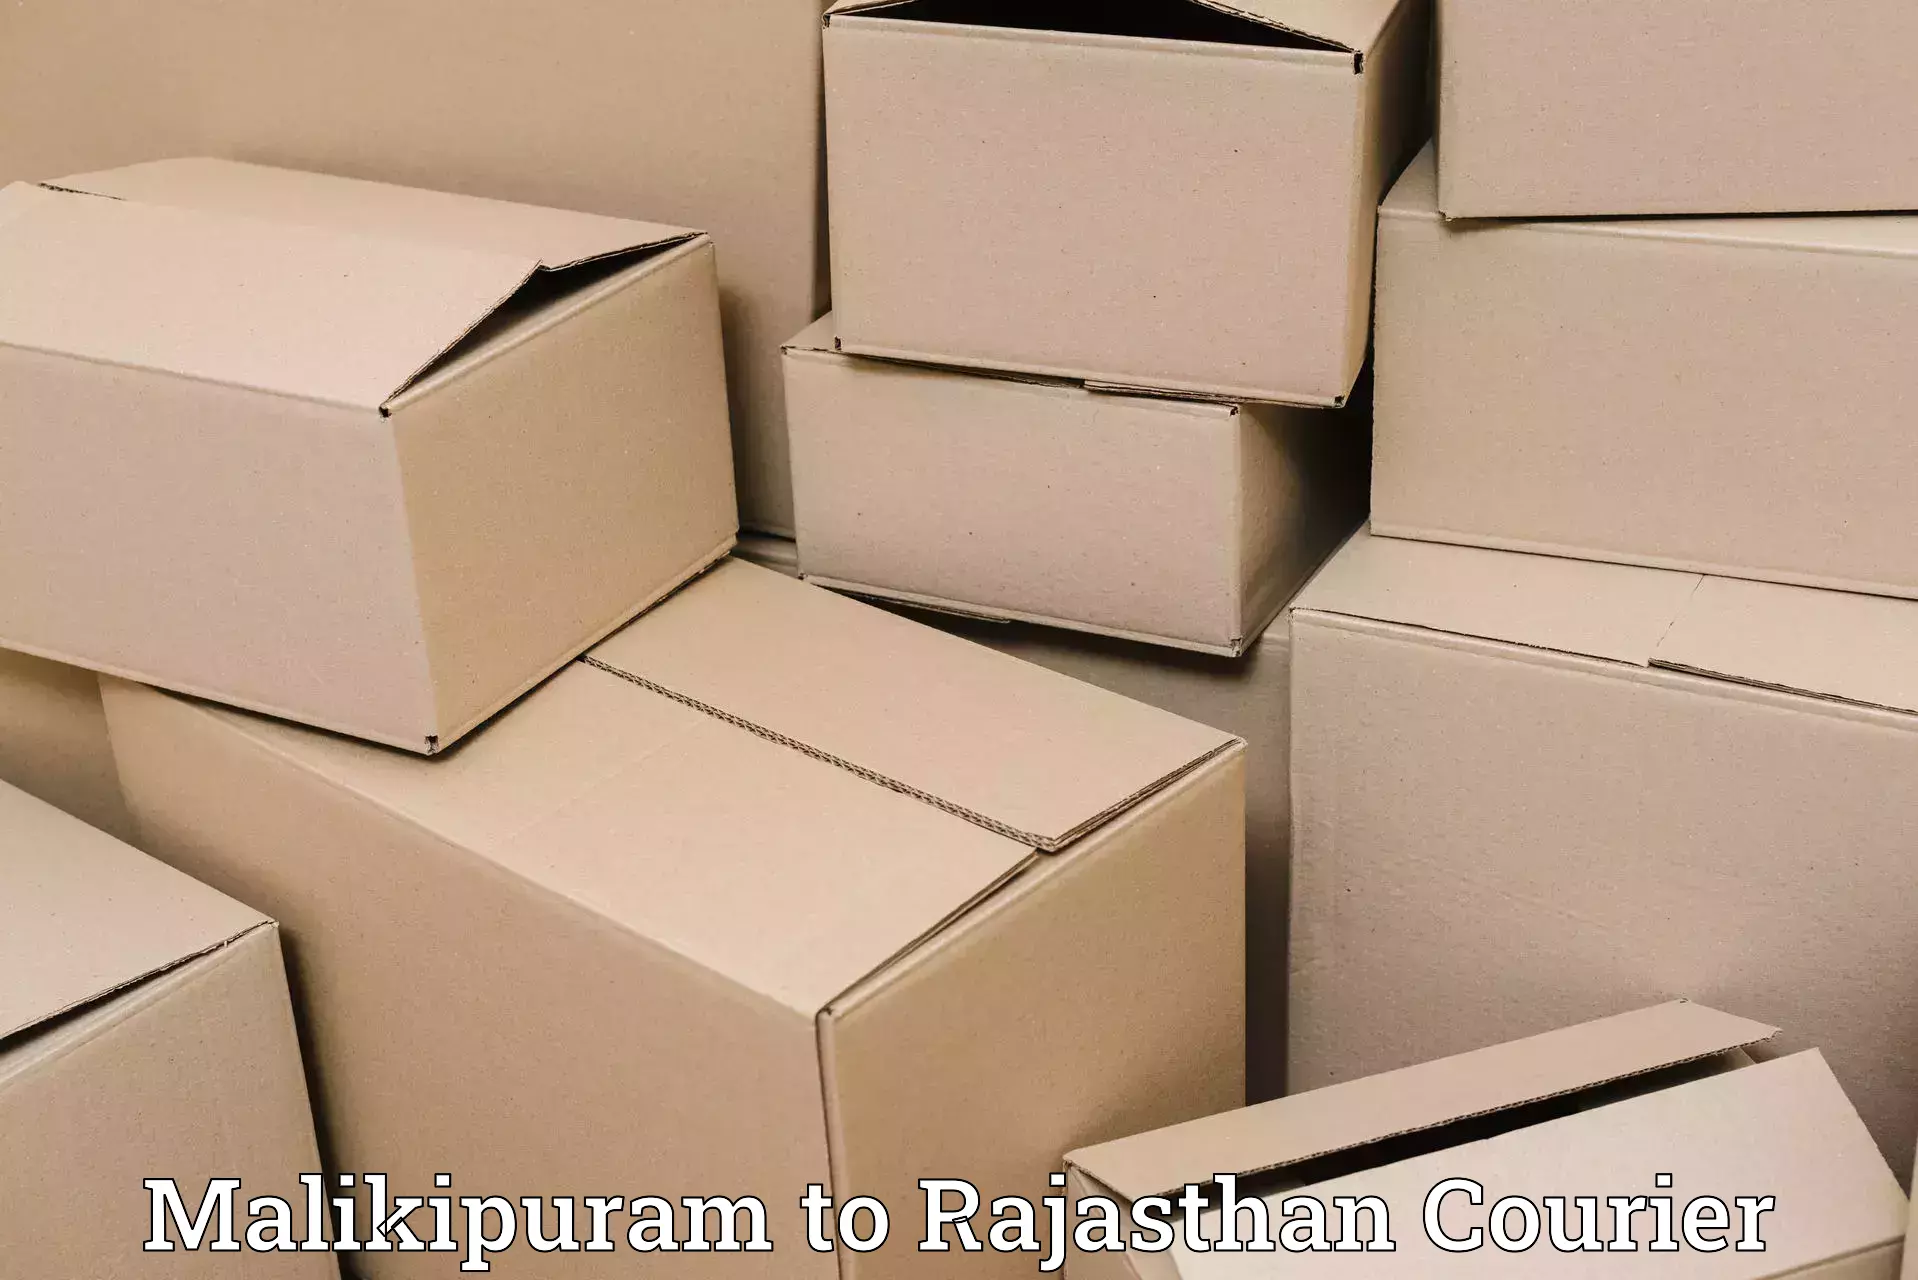 Modern courier technology Malikipuram to Rajasthan